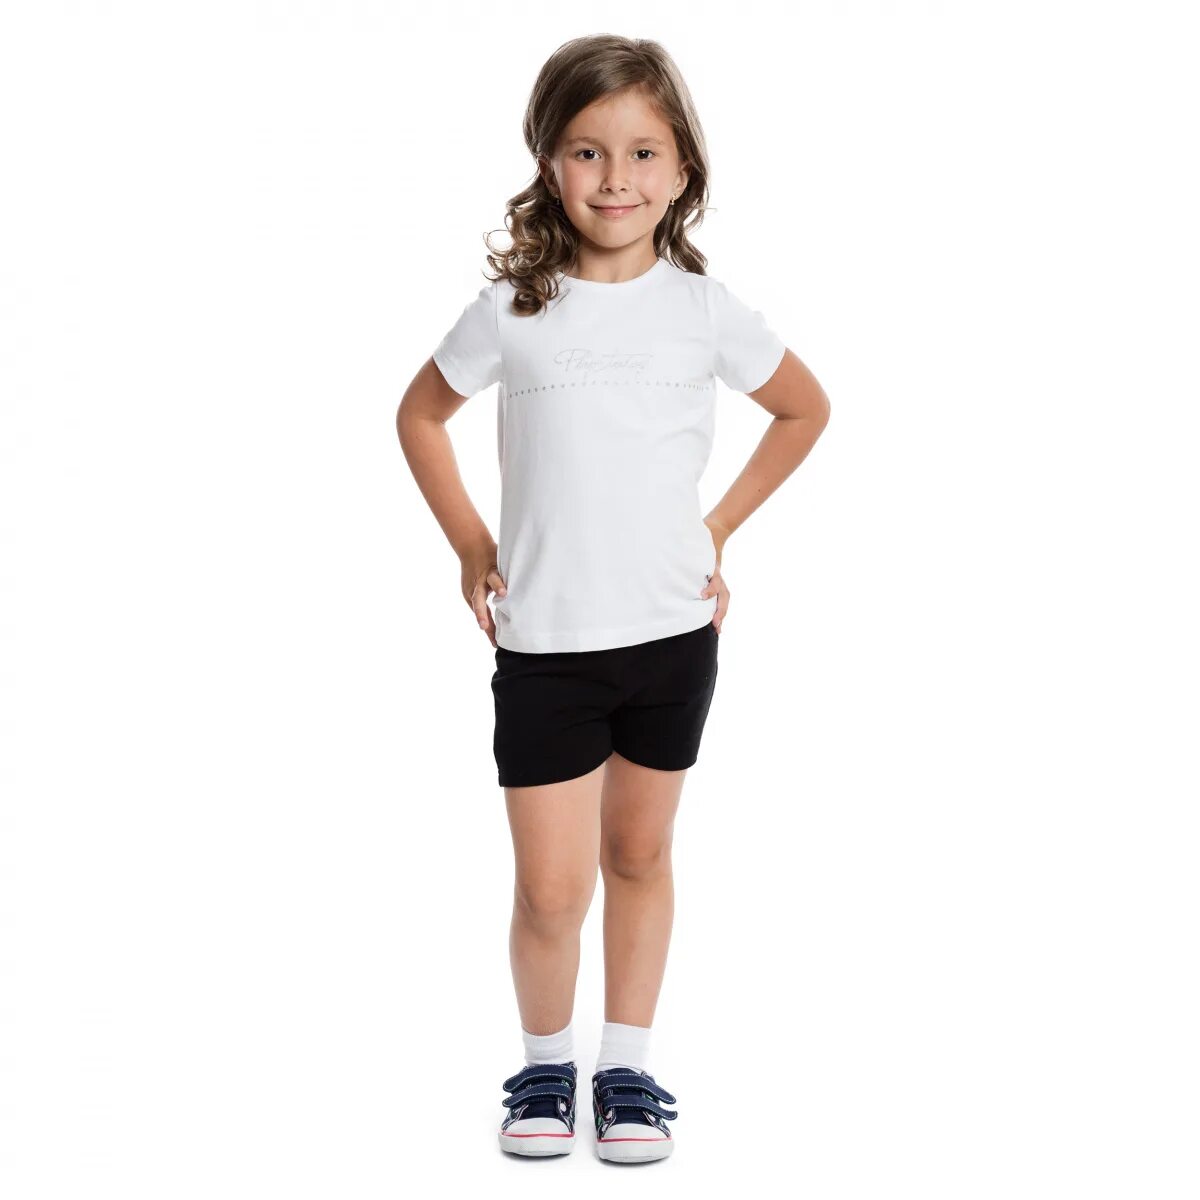 Спортивная форма белая футболка и черные шорты. Белая футболка и черные шорты. Физкультурная форма для девочек. Спортивная форма для первоклассника.